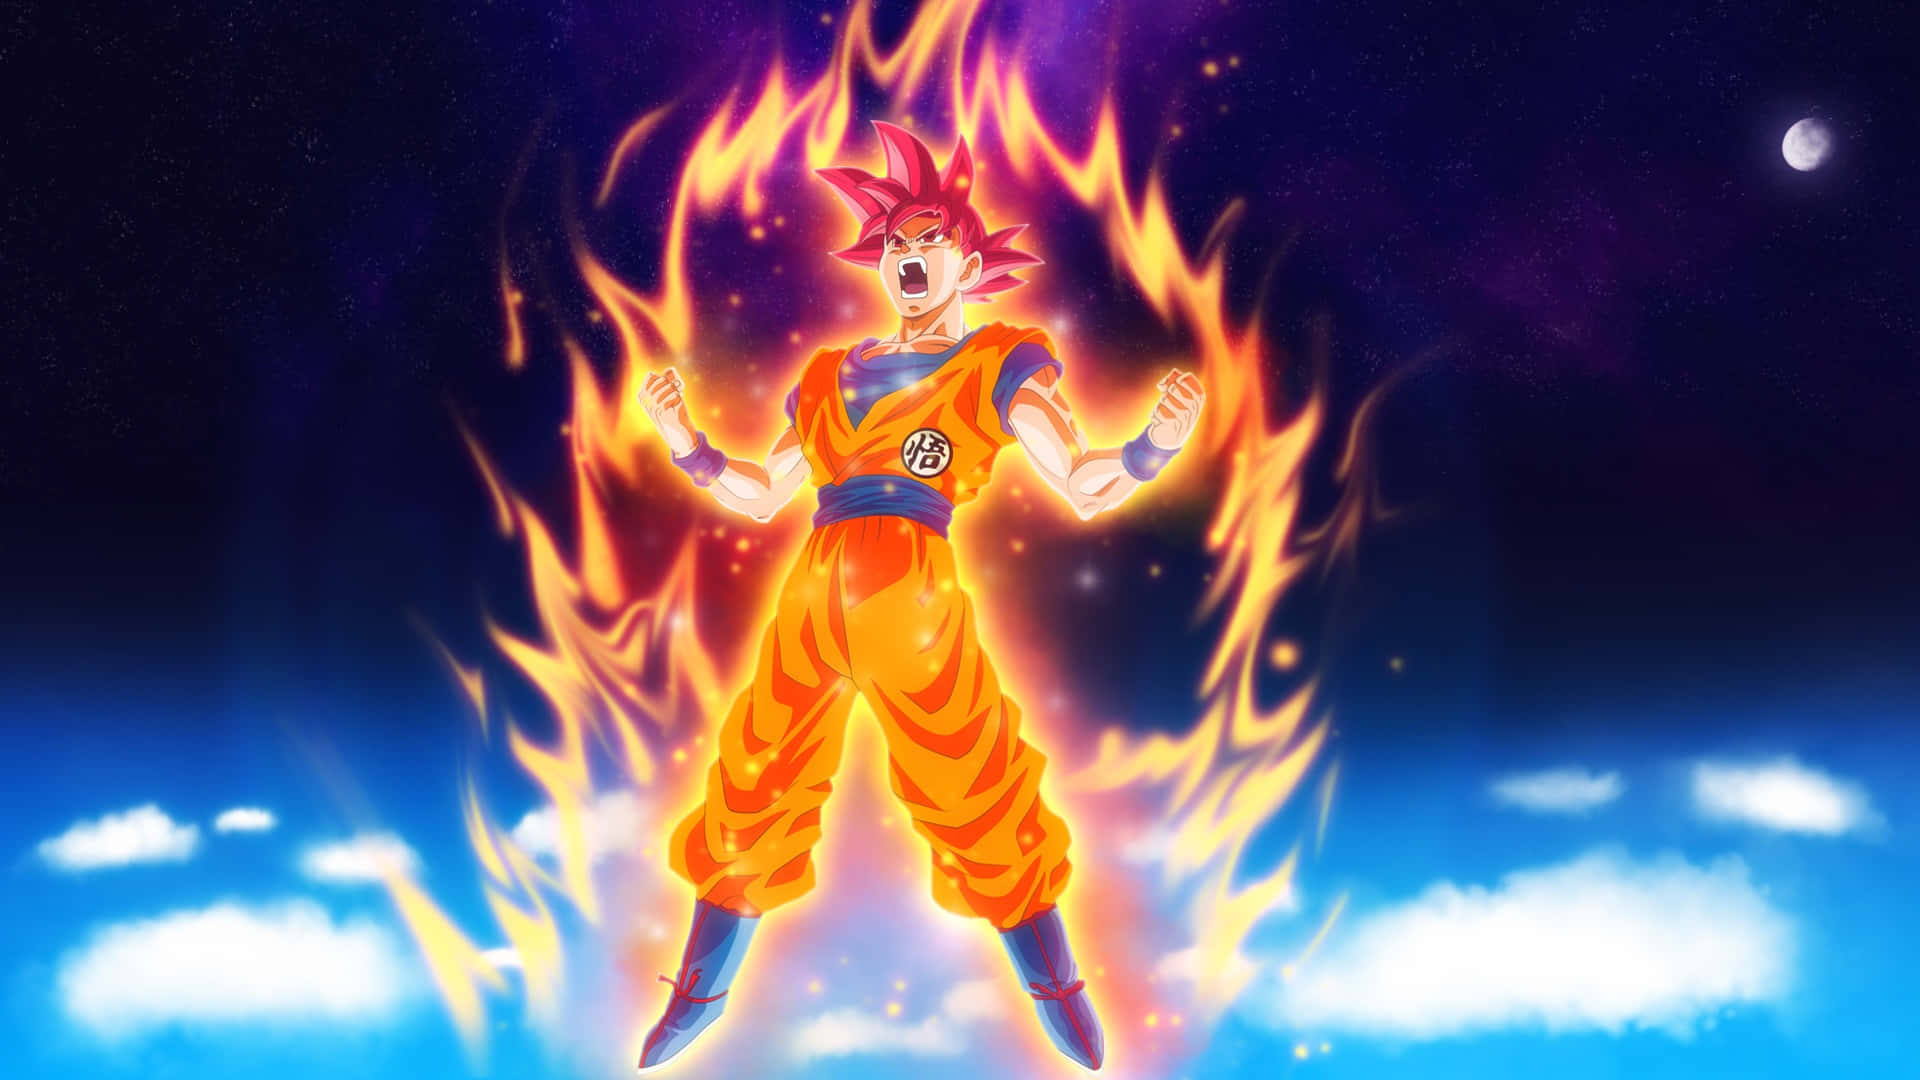 Imagende Goku Resucitado